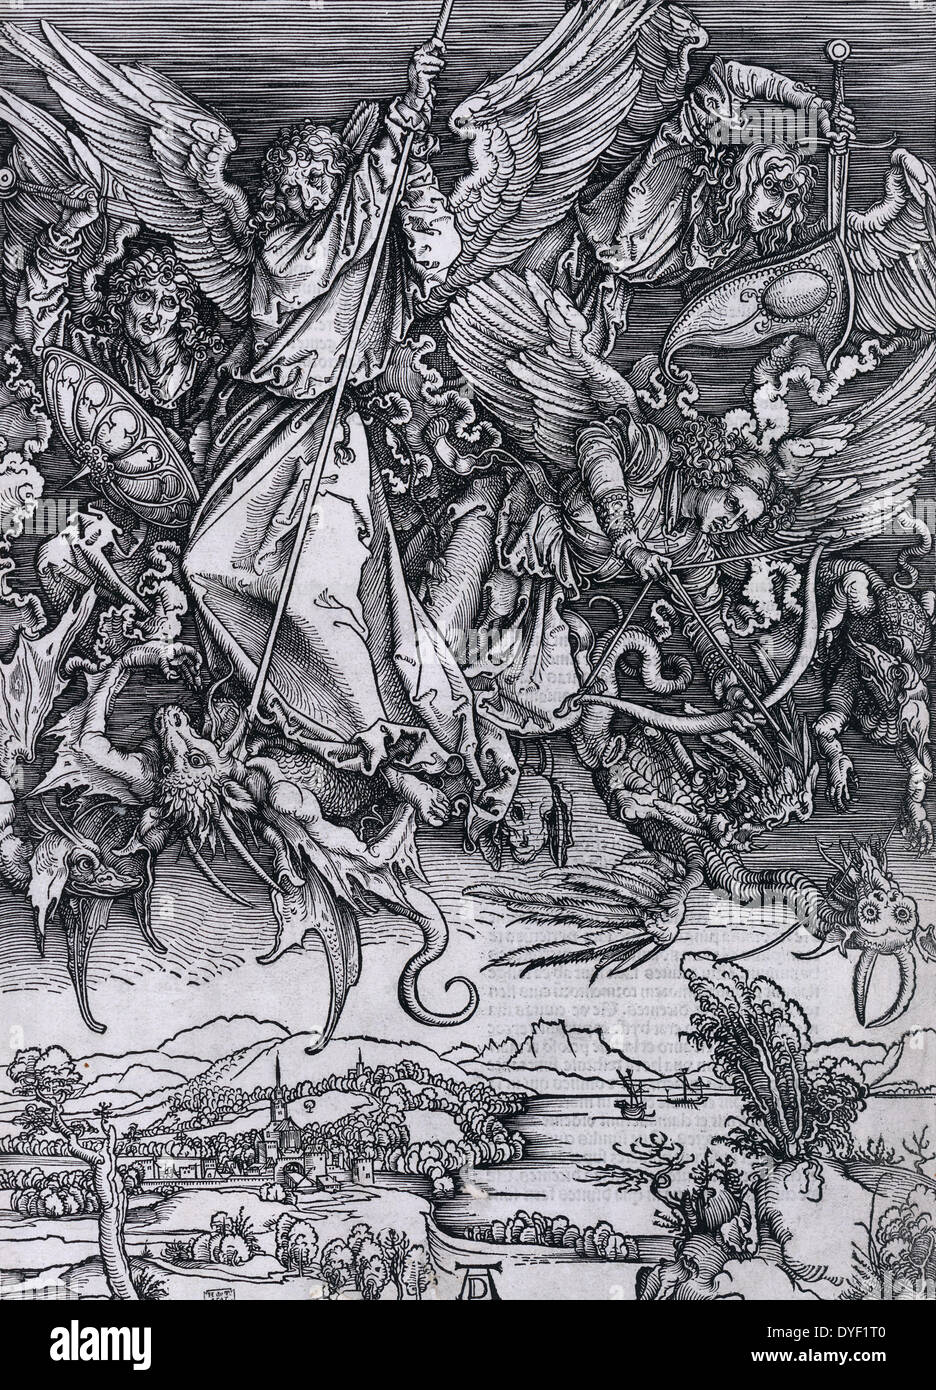 San Michele lotta contro il drago di Albrecht Dürer, 1471-1528, artista. Datata 1511 Foto Stock